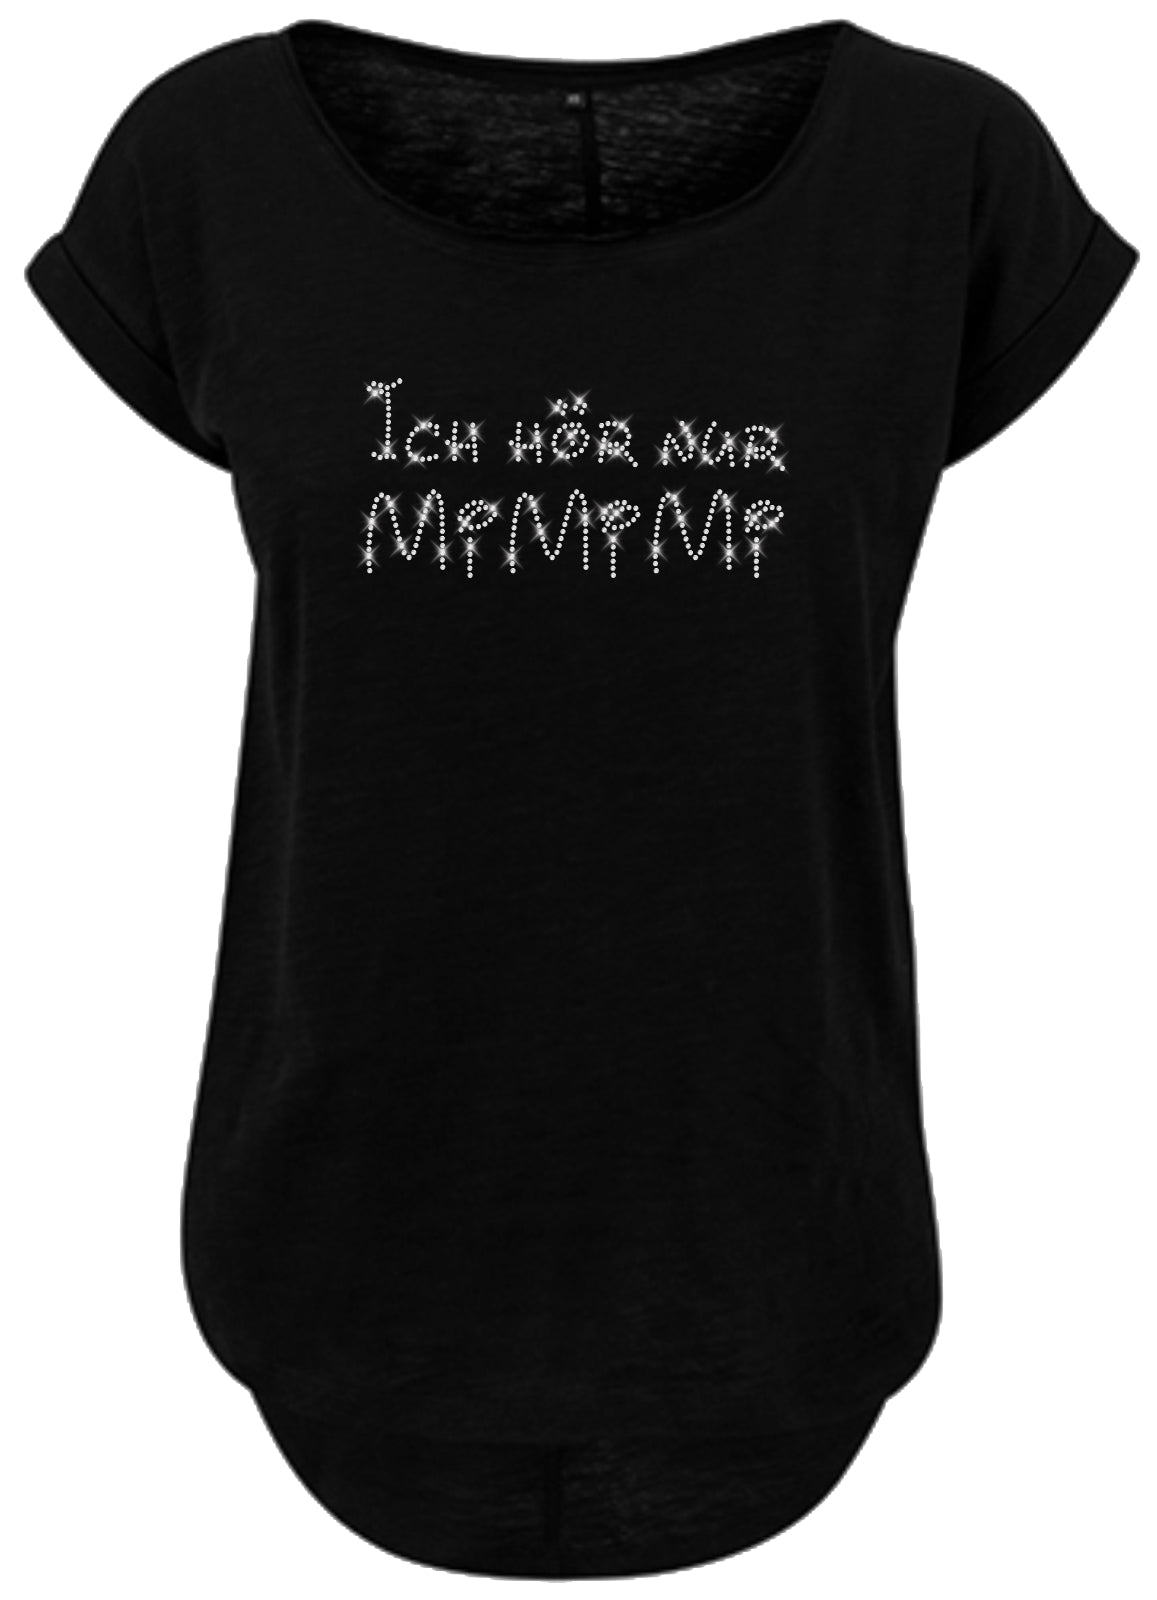 Blingeling®Shirts Damen T-Shirt   mit Spruch in Kristall Strass: Ich hör nur Mi Mi Mi